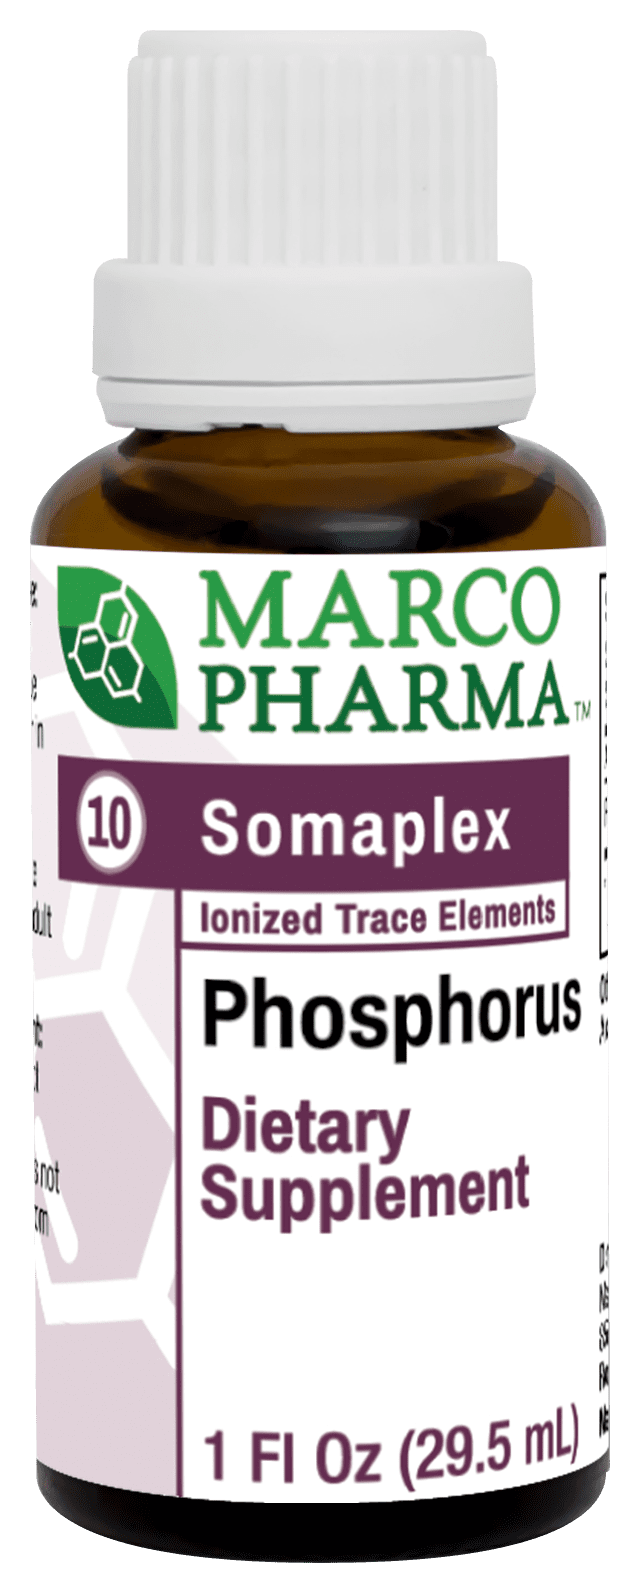 Phosphorous Somaplex